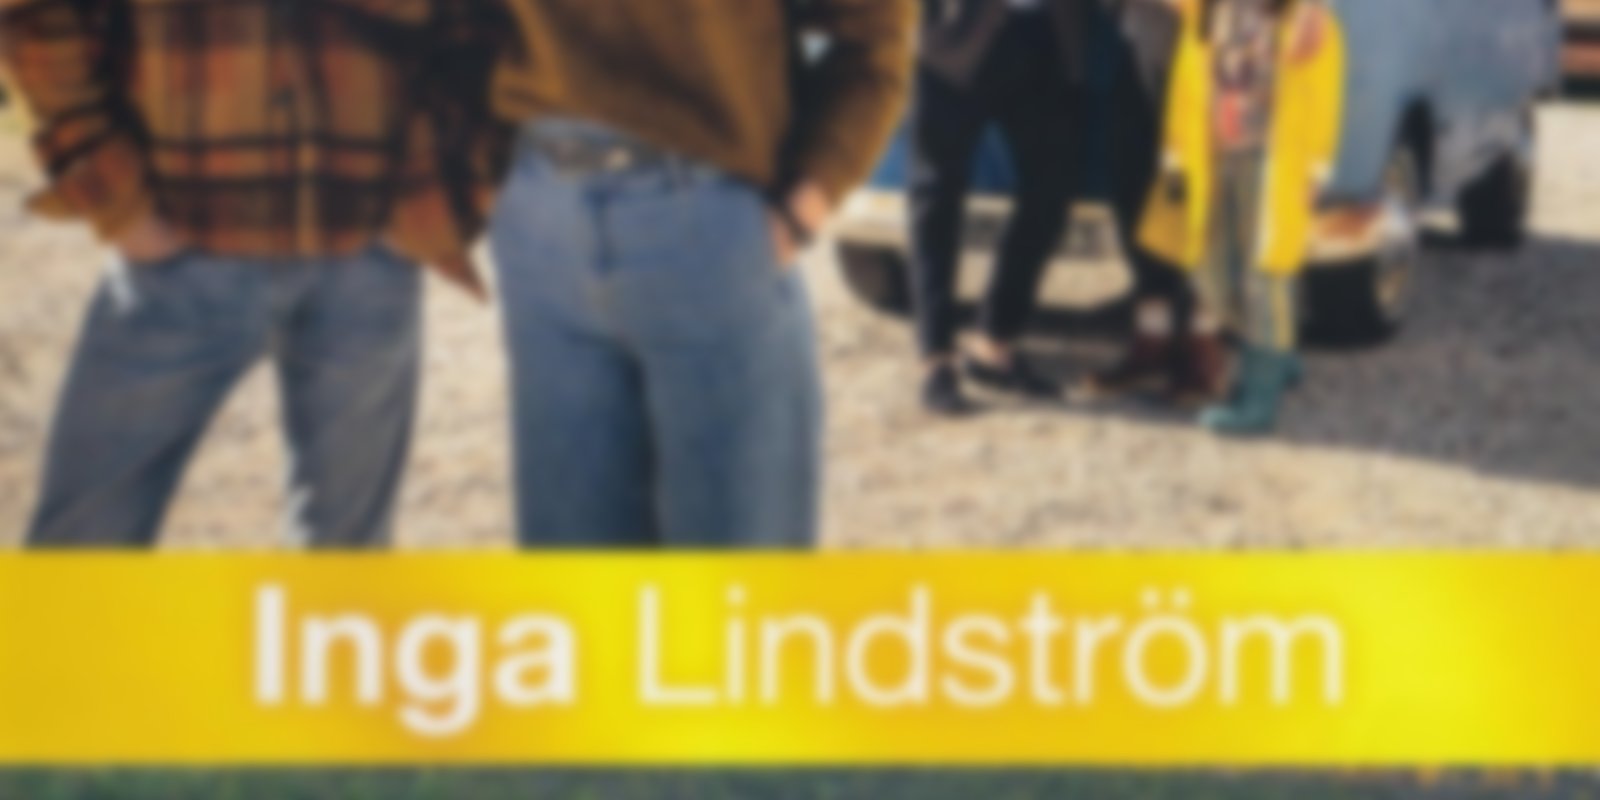 Inga Lindström - Auf der Suche nach dir